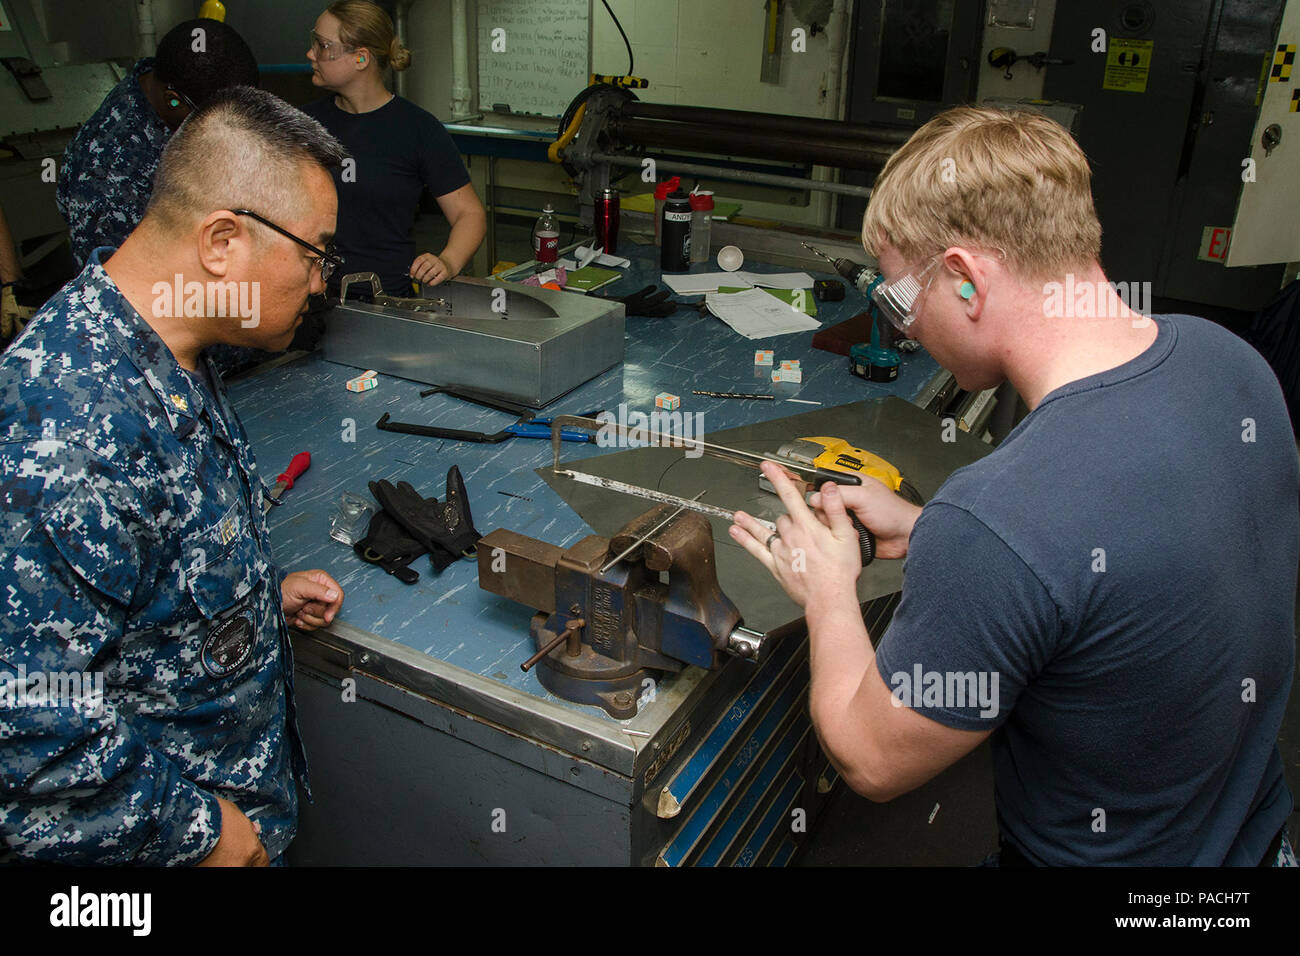 160316-N-YM 720-214 POLARIS, Guam (16. März 2016) Rumpf Wartungstechniker 3. Klasse William Clark, ein Seemann an der Emory S. Land zugewiesen u-boot Tender USS Frank Kabel (wie 40), verwenden Sie eine Säge ein Metallrohr im Blech shop zu schneiden. Frank Kabel, sich auf der Insel Guam eingesetzt, führt die Wartung und den Support von U-Booten und Überwasserschiffen in die USA 7 Flotte Verantwortungsbereich eingesetzt. (U.S. Marine Foto von Mass Communication Specialist 3. Klasse allen Michael McNair/Freigegeben) Stockfoto